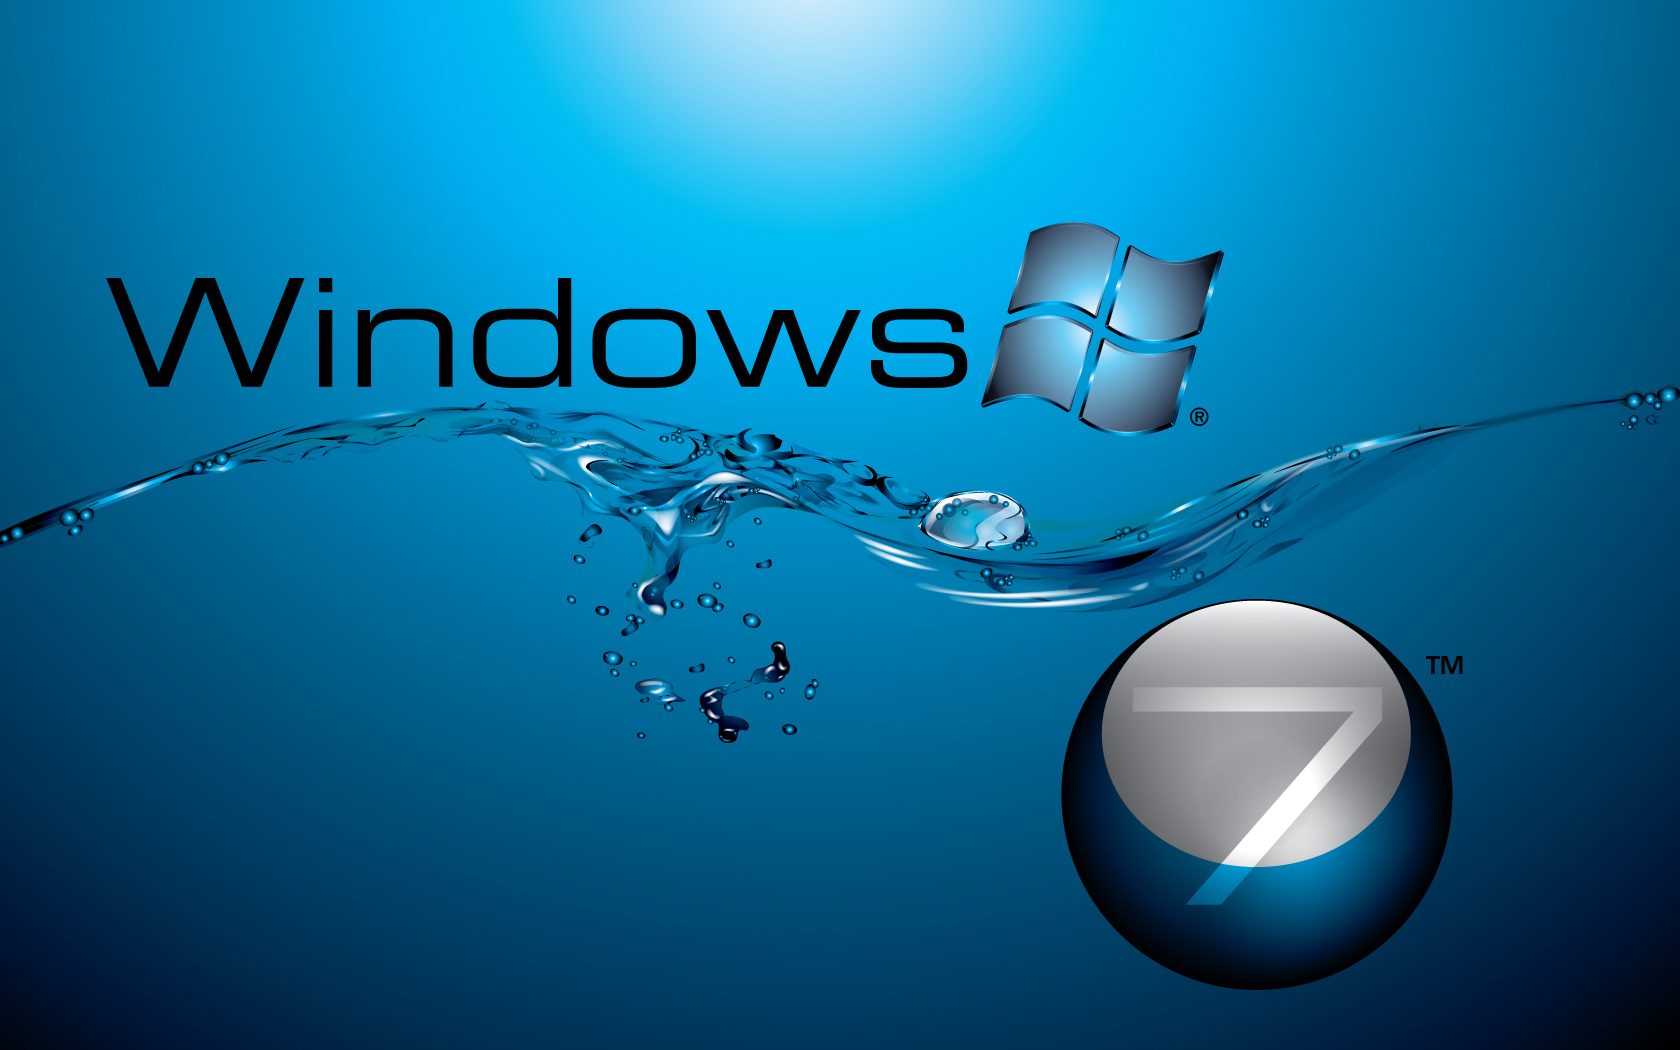 Wallpaper Windows 7 Hd 3d For Laptop Image Num 13